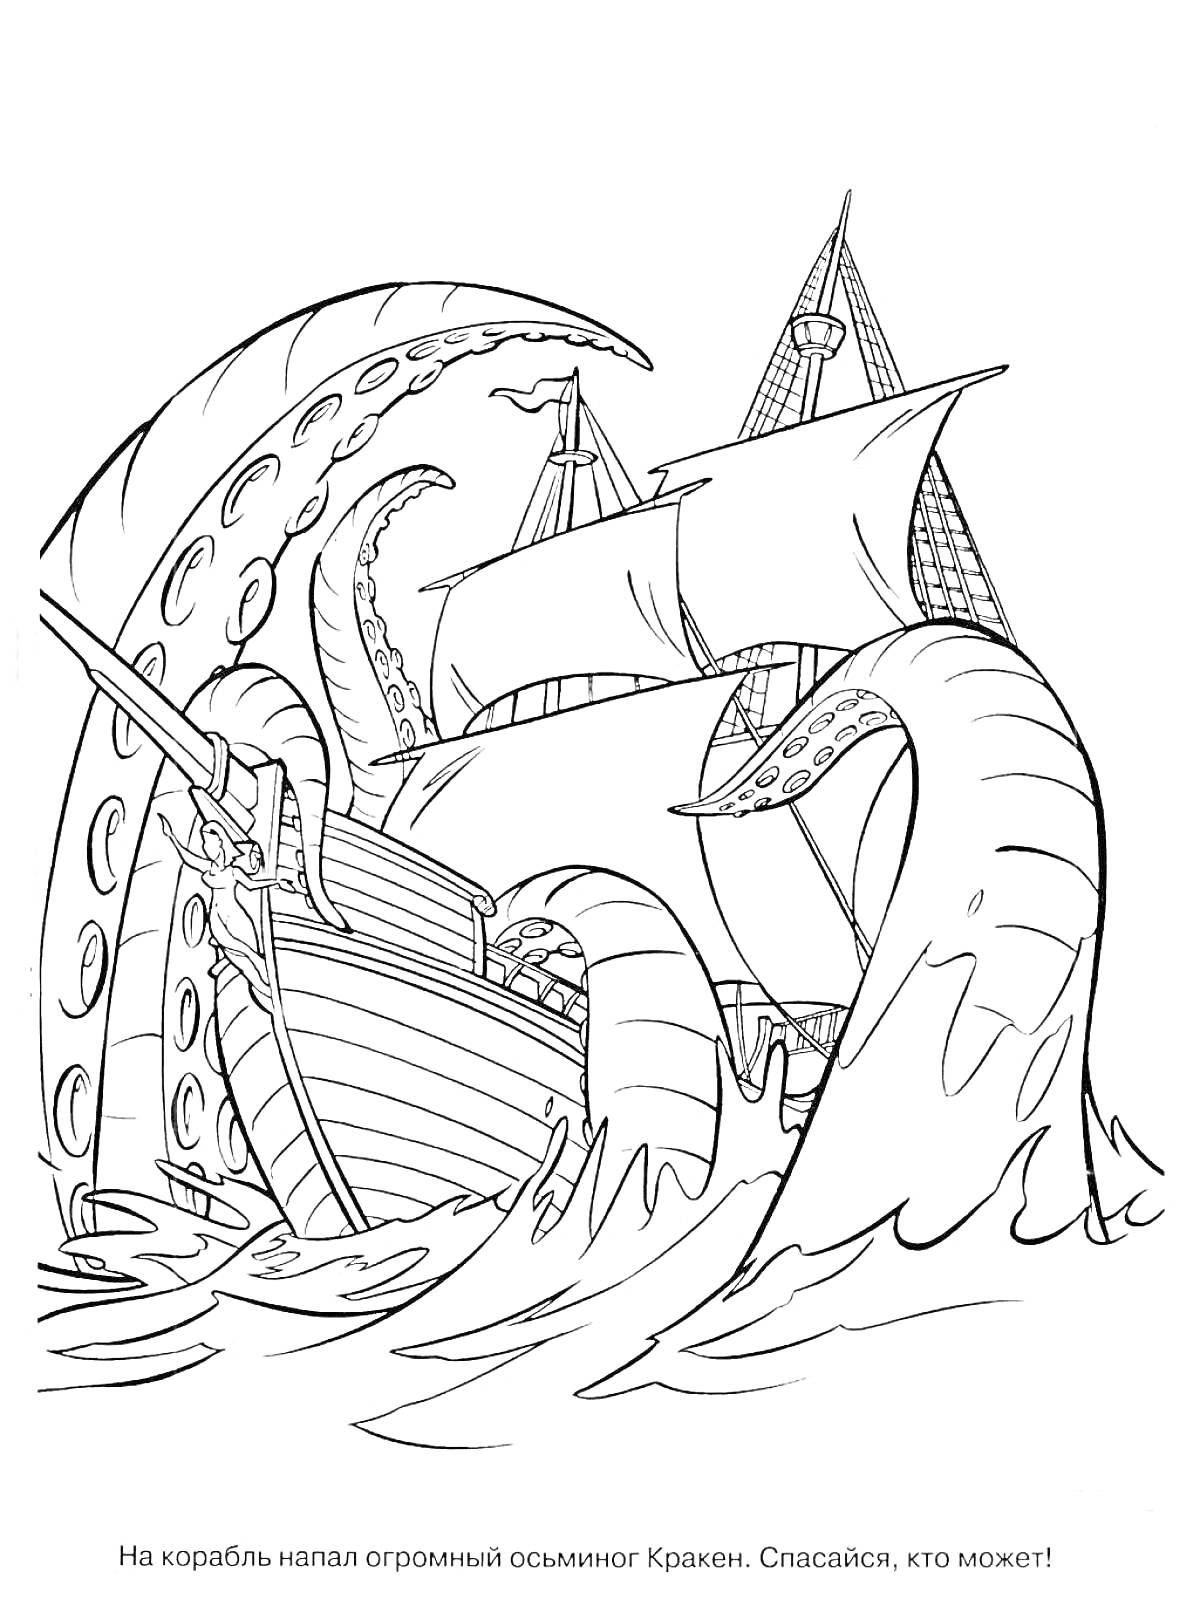 Корабль, атакованный огромным осьминогом Кракеном